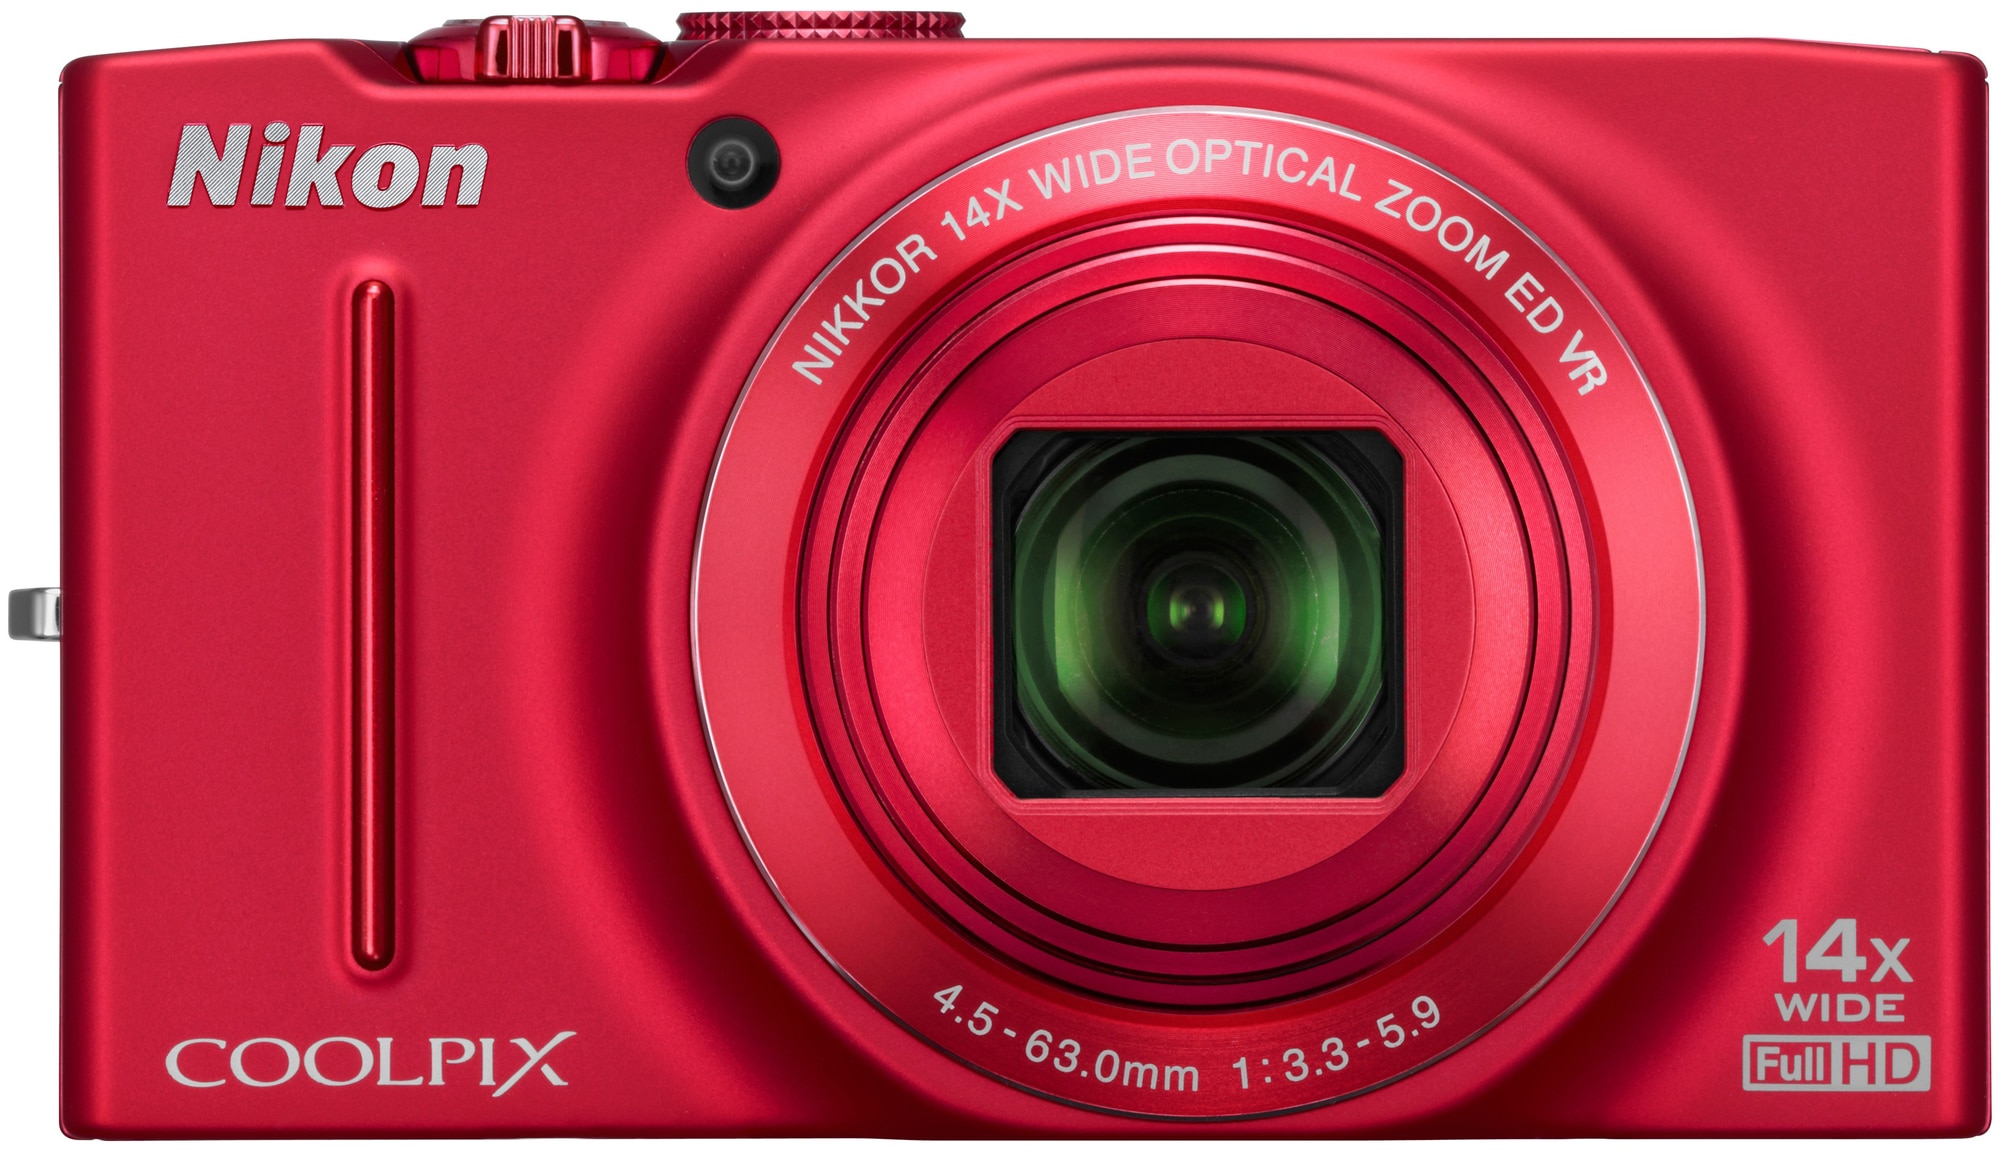 Nikon CoolPix S8200 digikamera (punainen) - Gigantti verkkokauppa